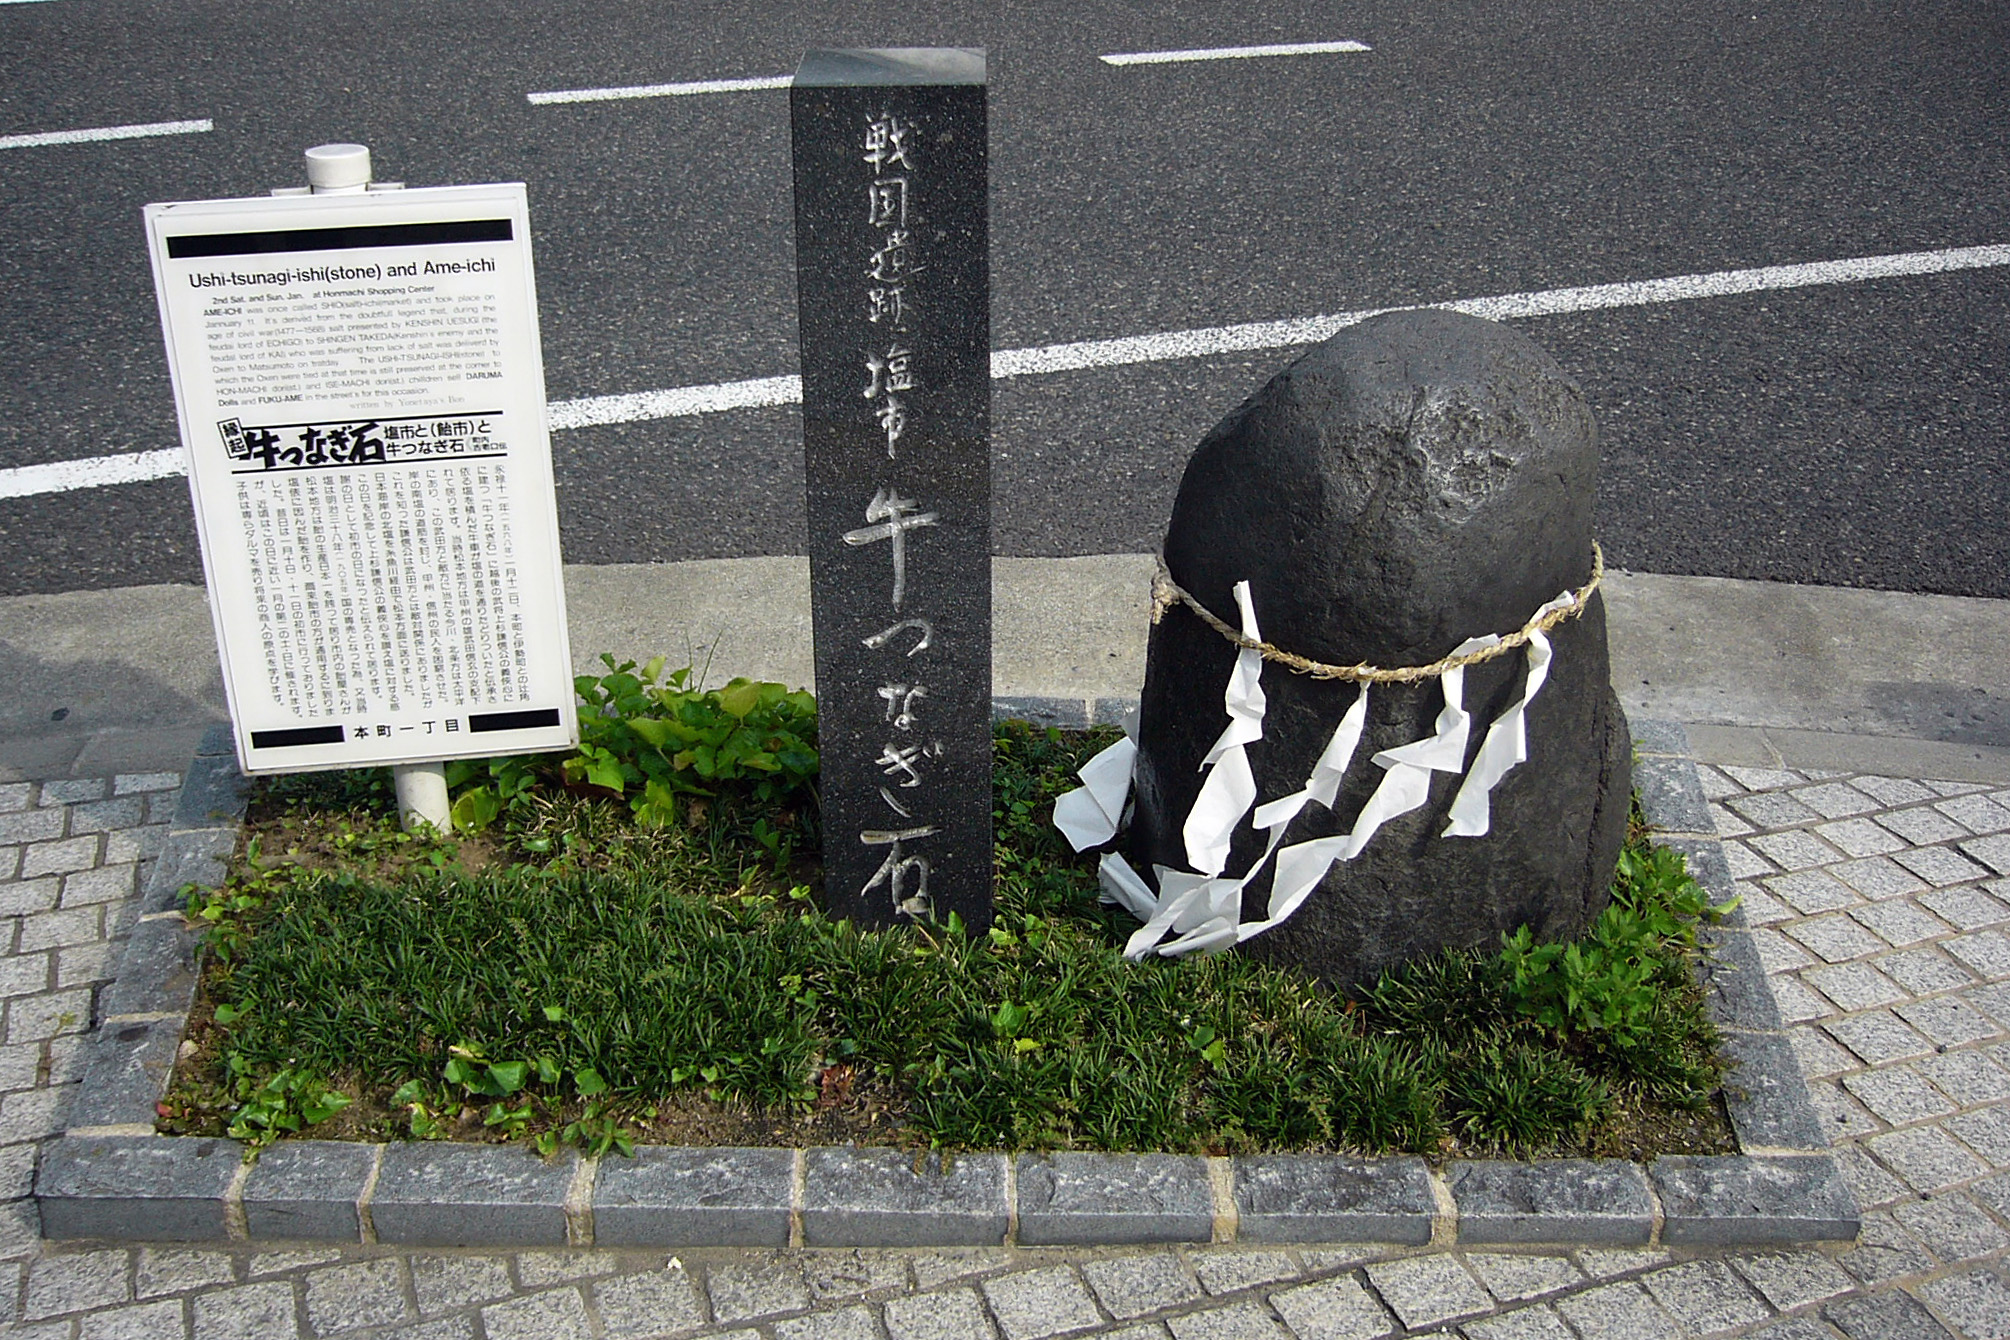 Ushi-tsunagi-ishi01s2010.jpg